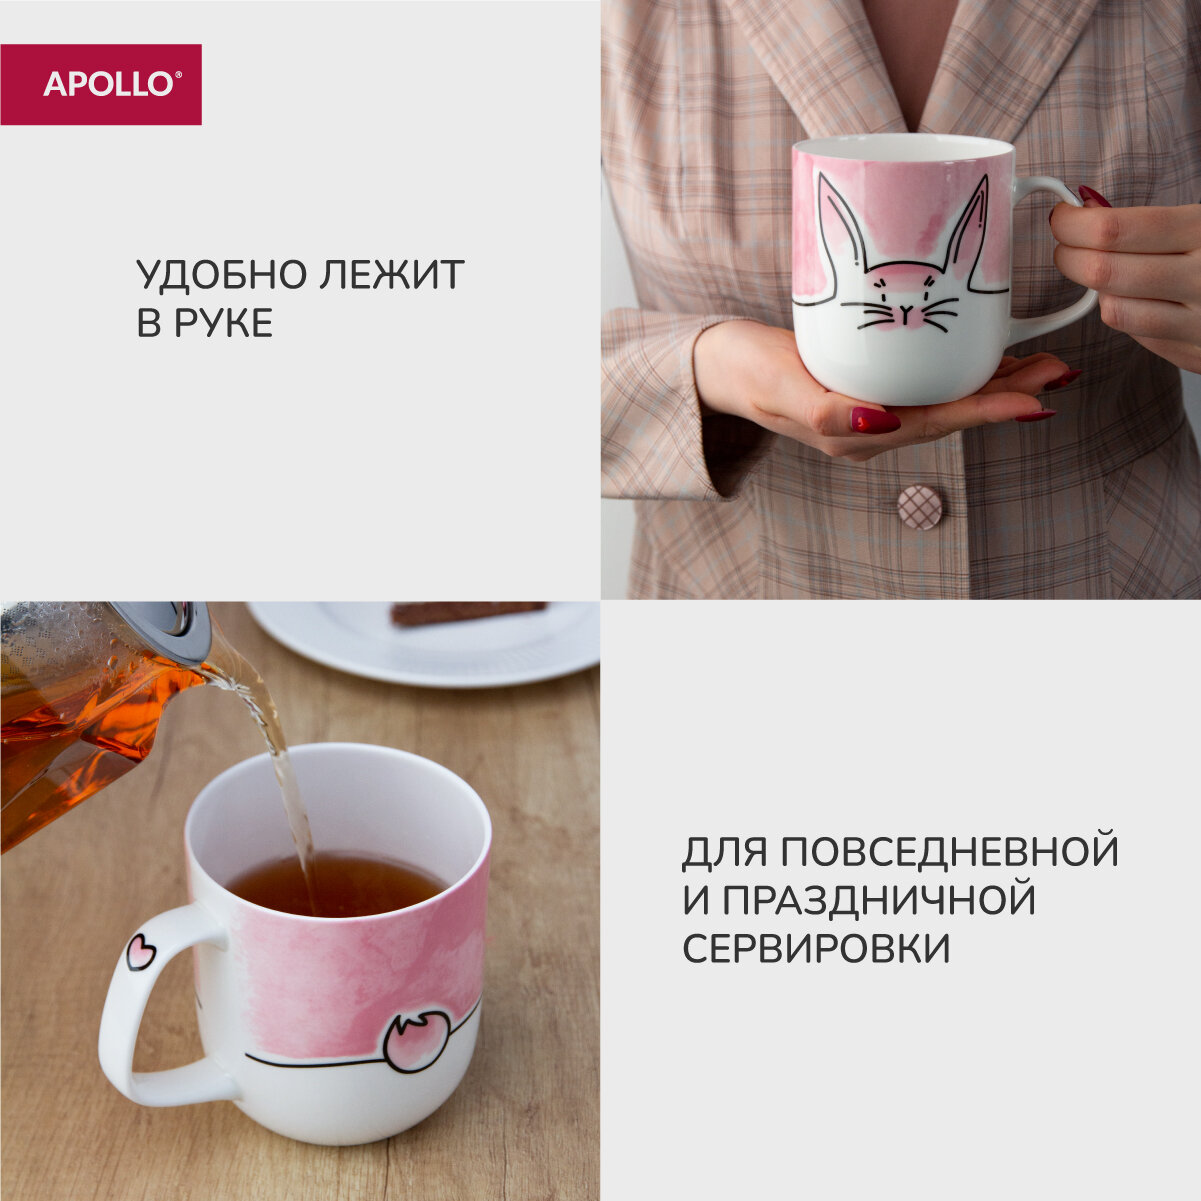 Кружка фарфоровая, для чая и кофе Apollo "Rabbie Basalto" объём 600 мл, кружка подарочная женская, мужская, детская.